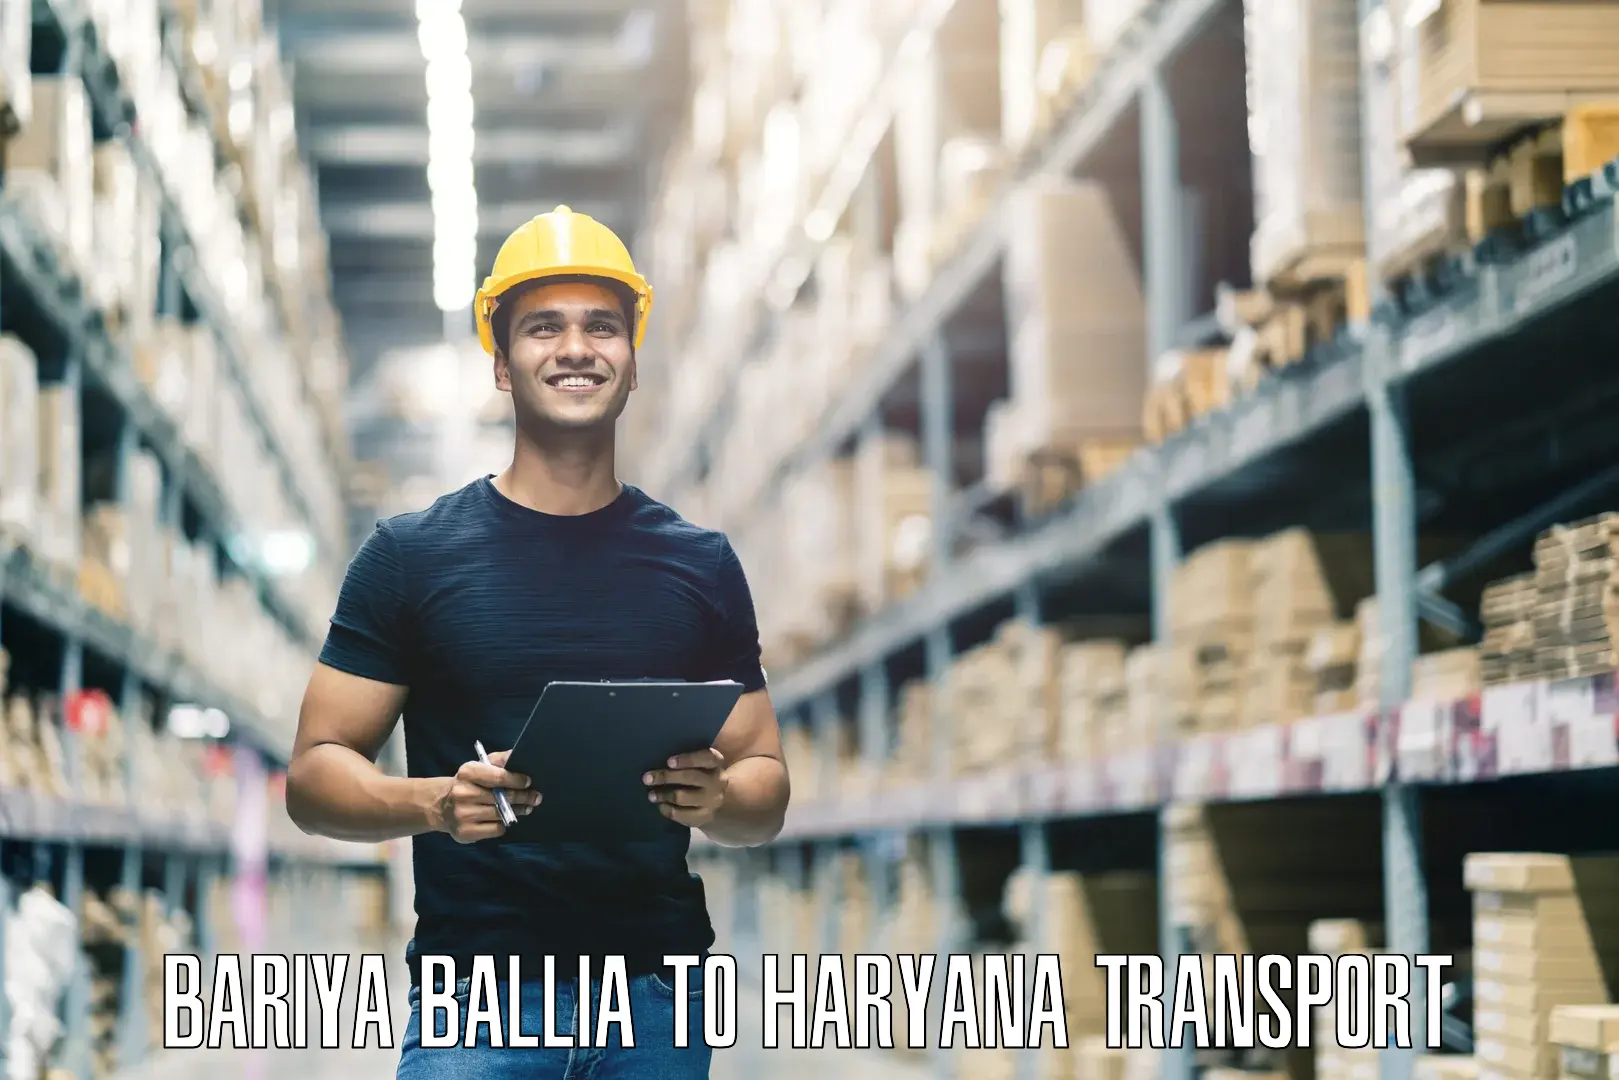 Bike shipping service Bariya Ballia to Abhimanyupur